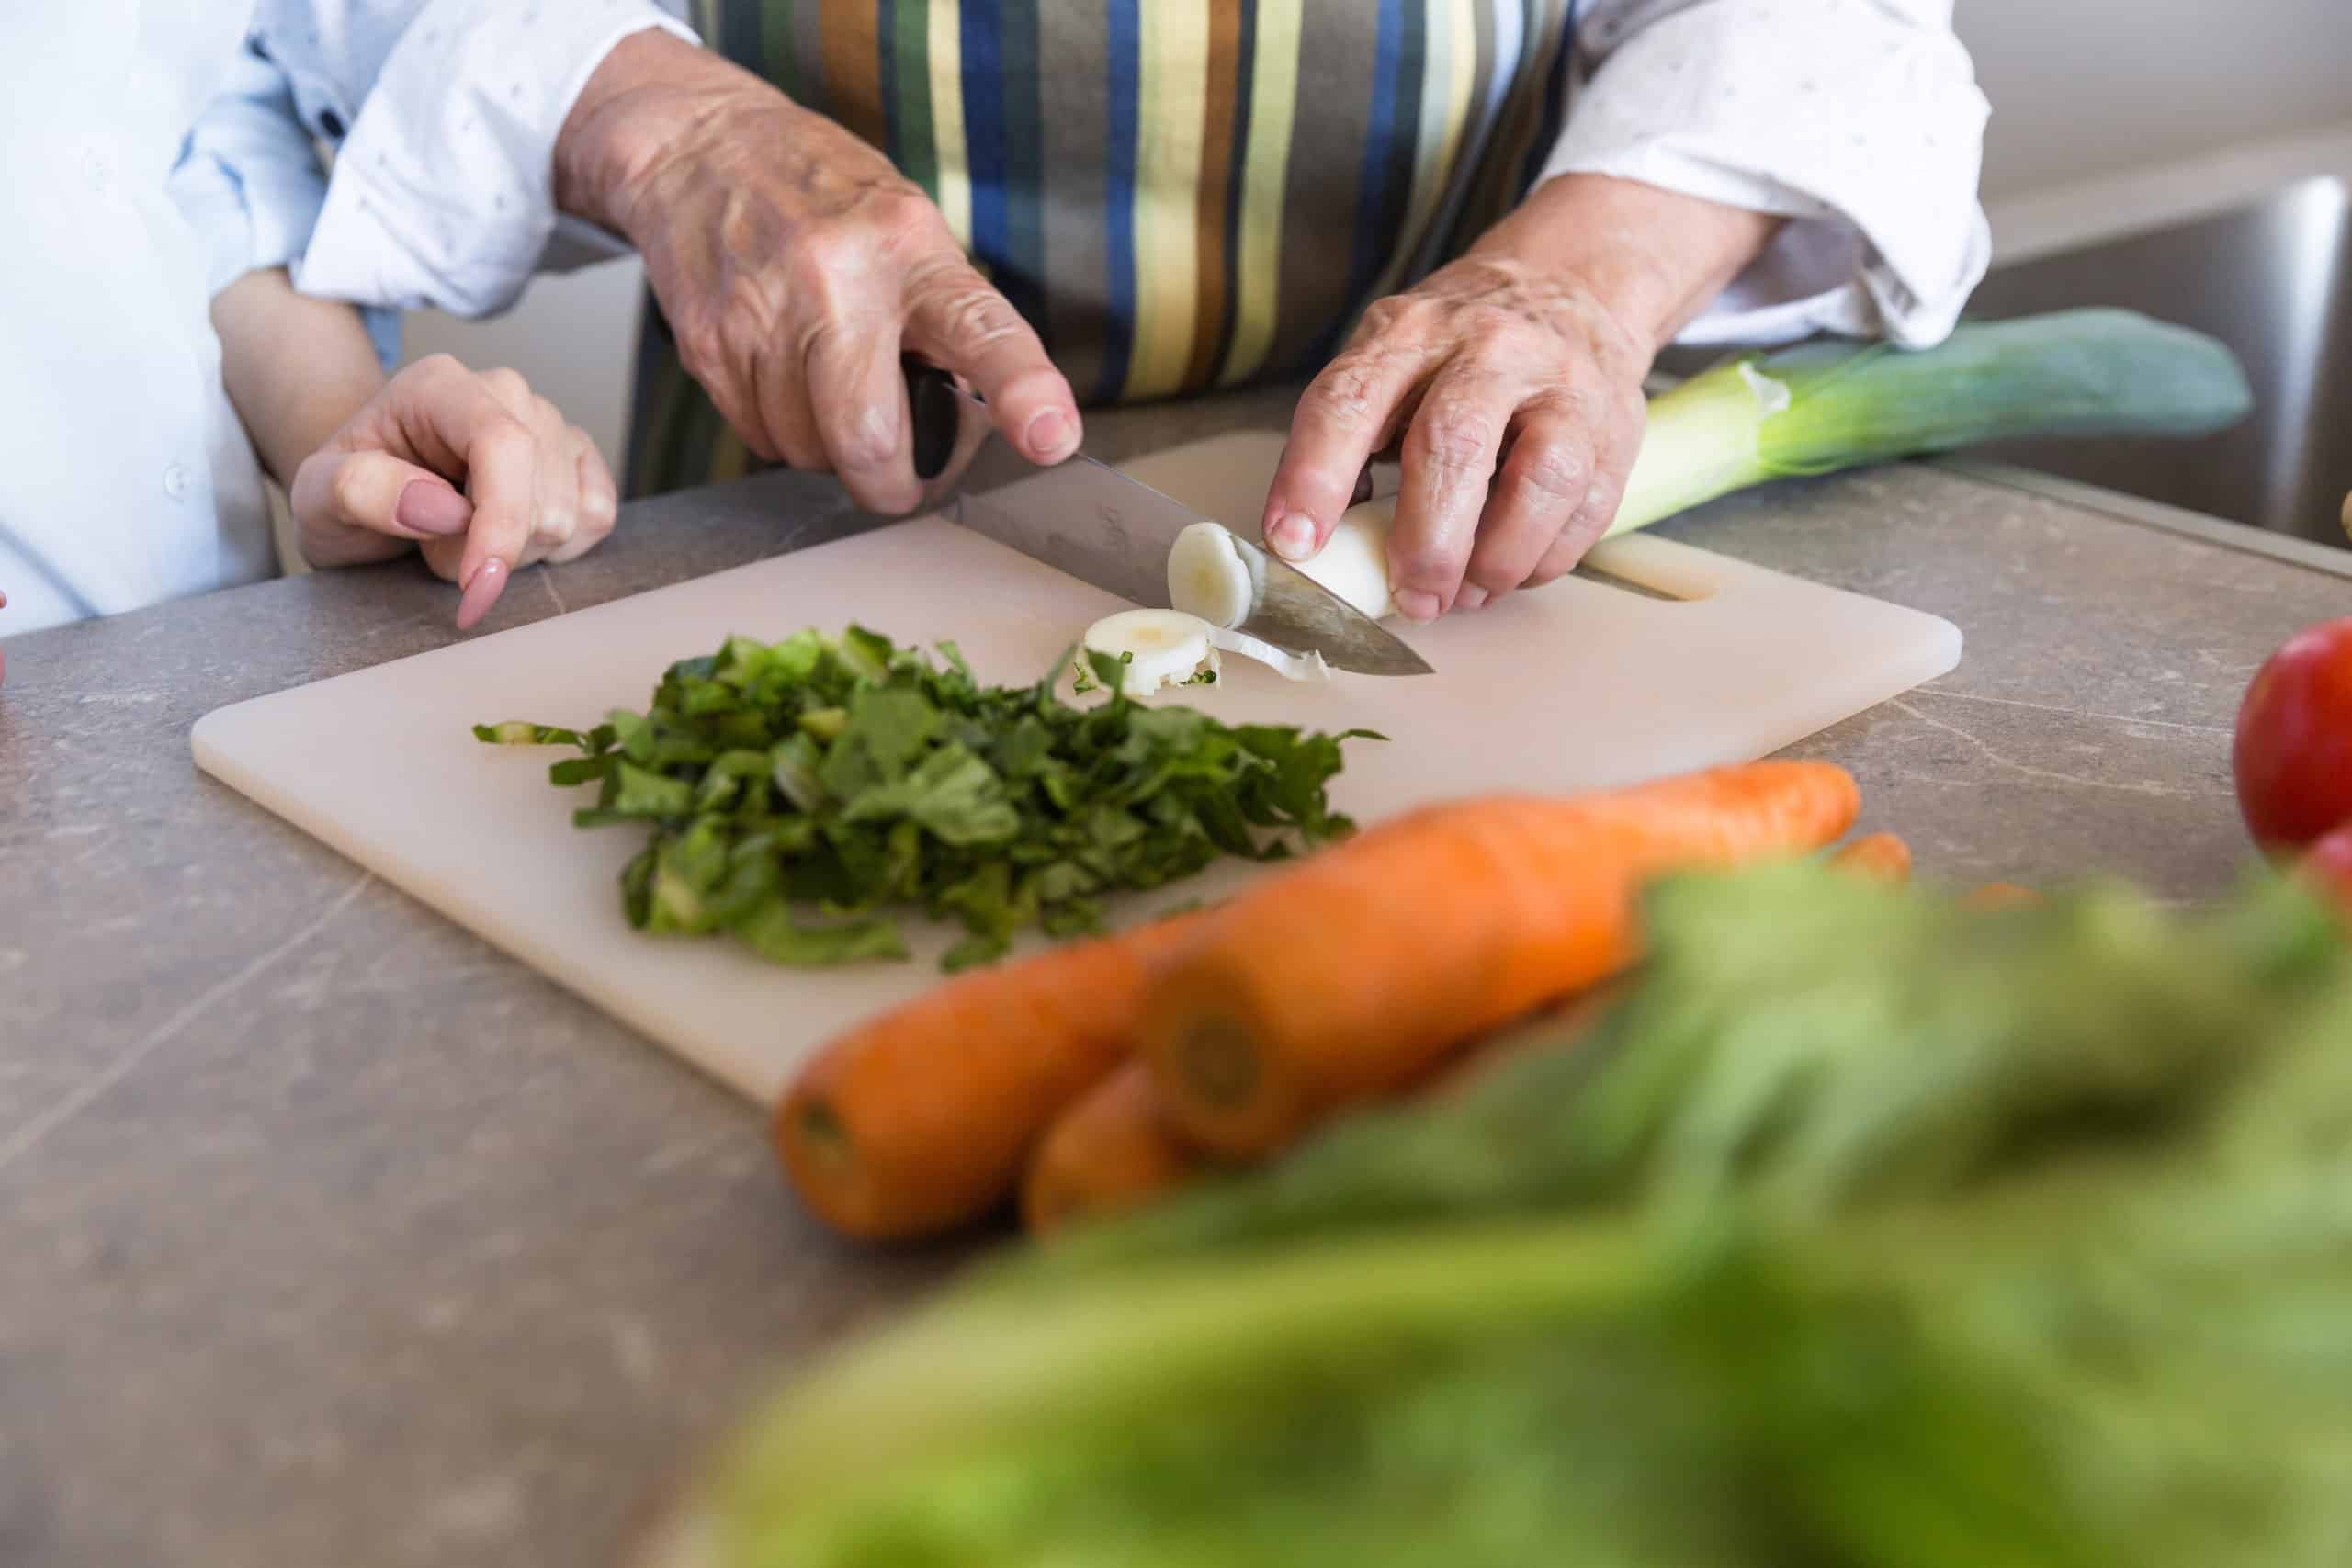 Older hands cutting vegetables